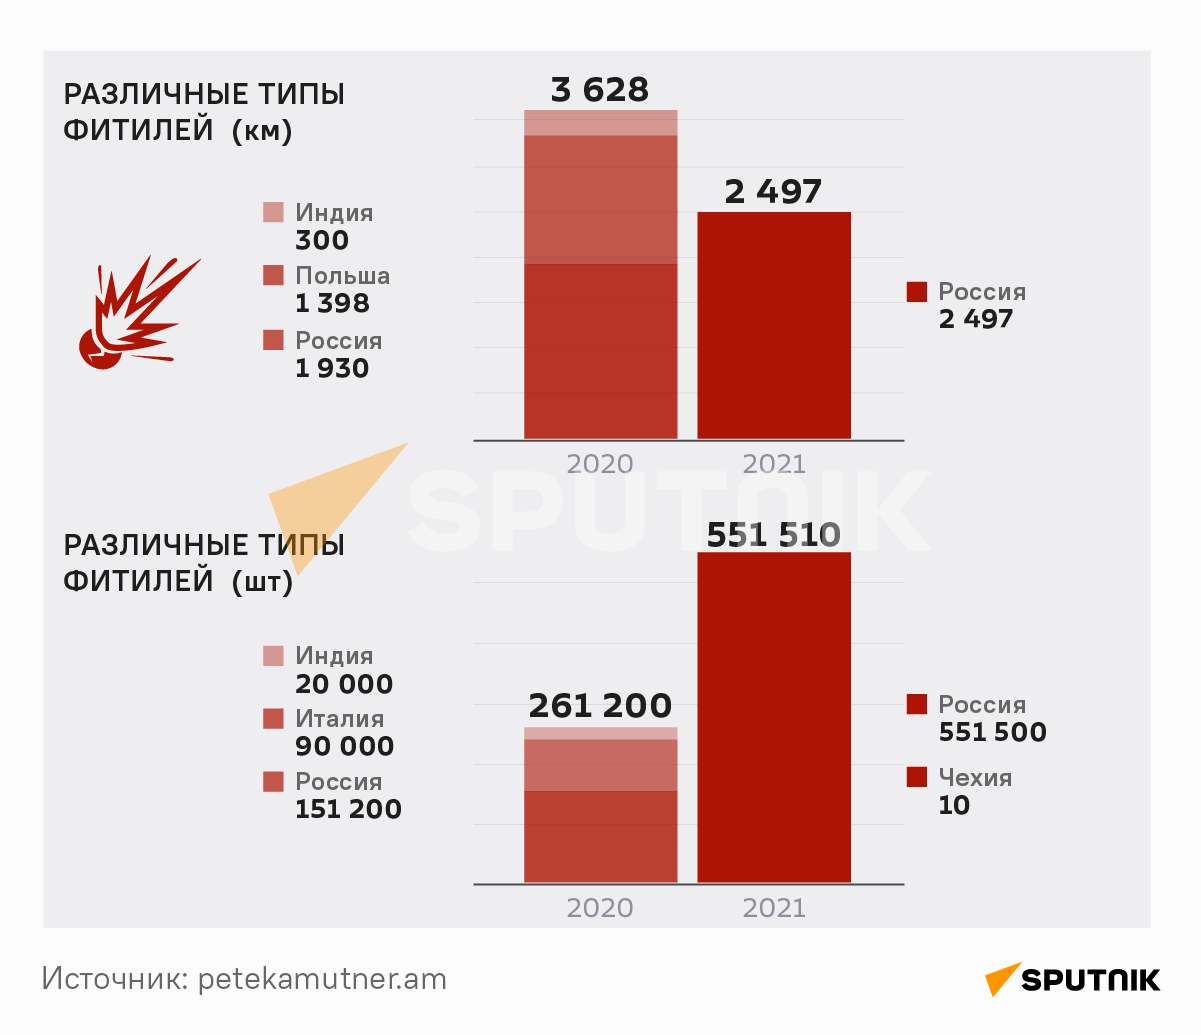 Сколько  взрывчатых веществ и пиротехники было импортировано в Армению в 2020-21 годах - Sputnik Армения